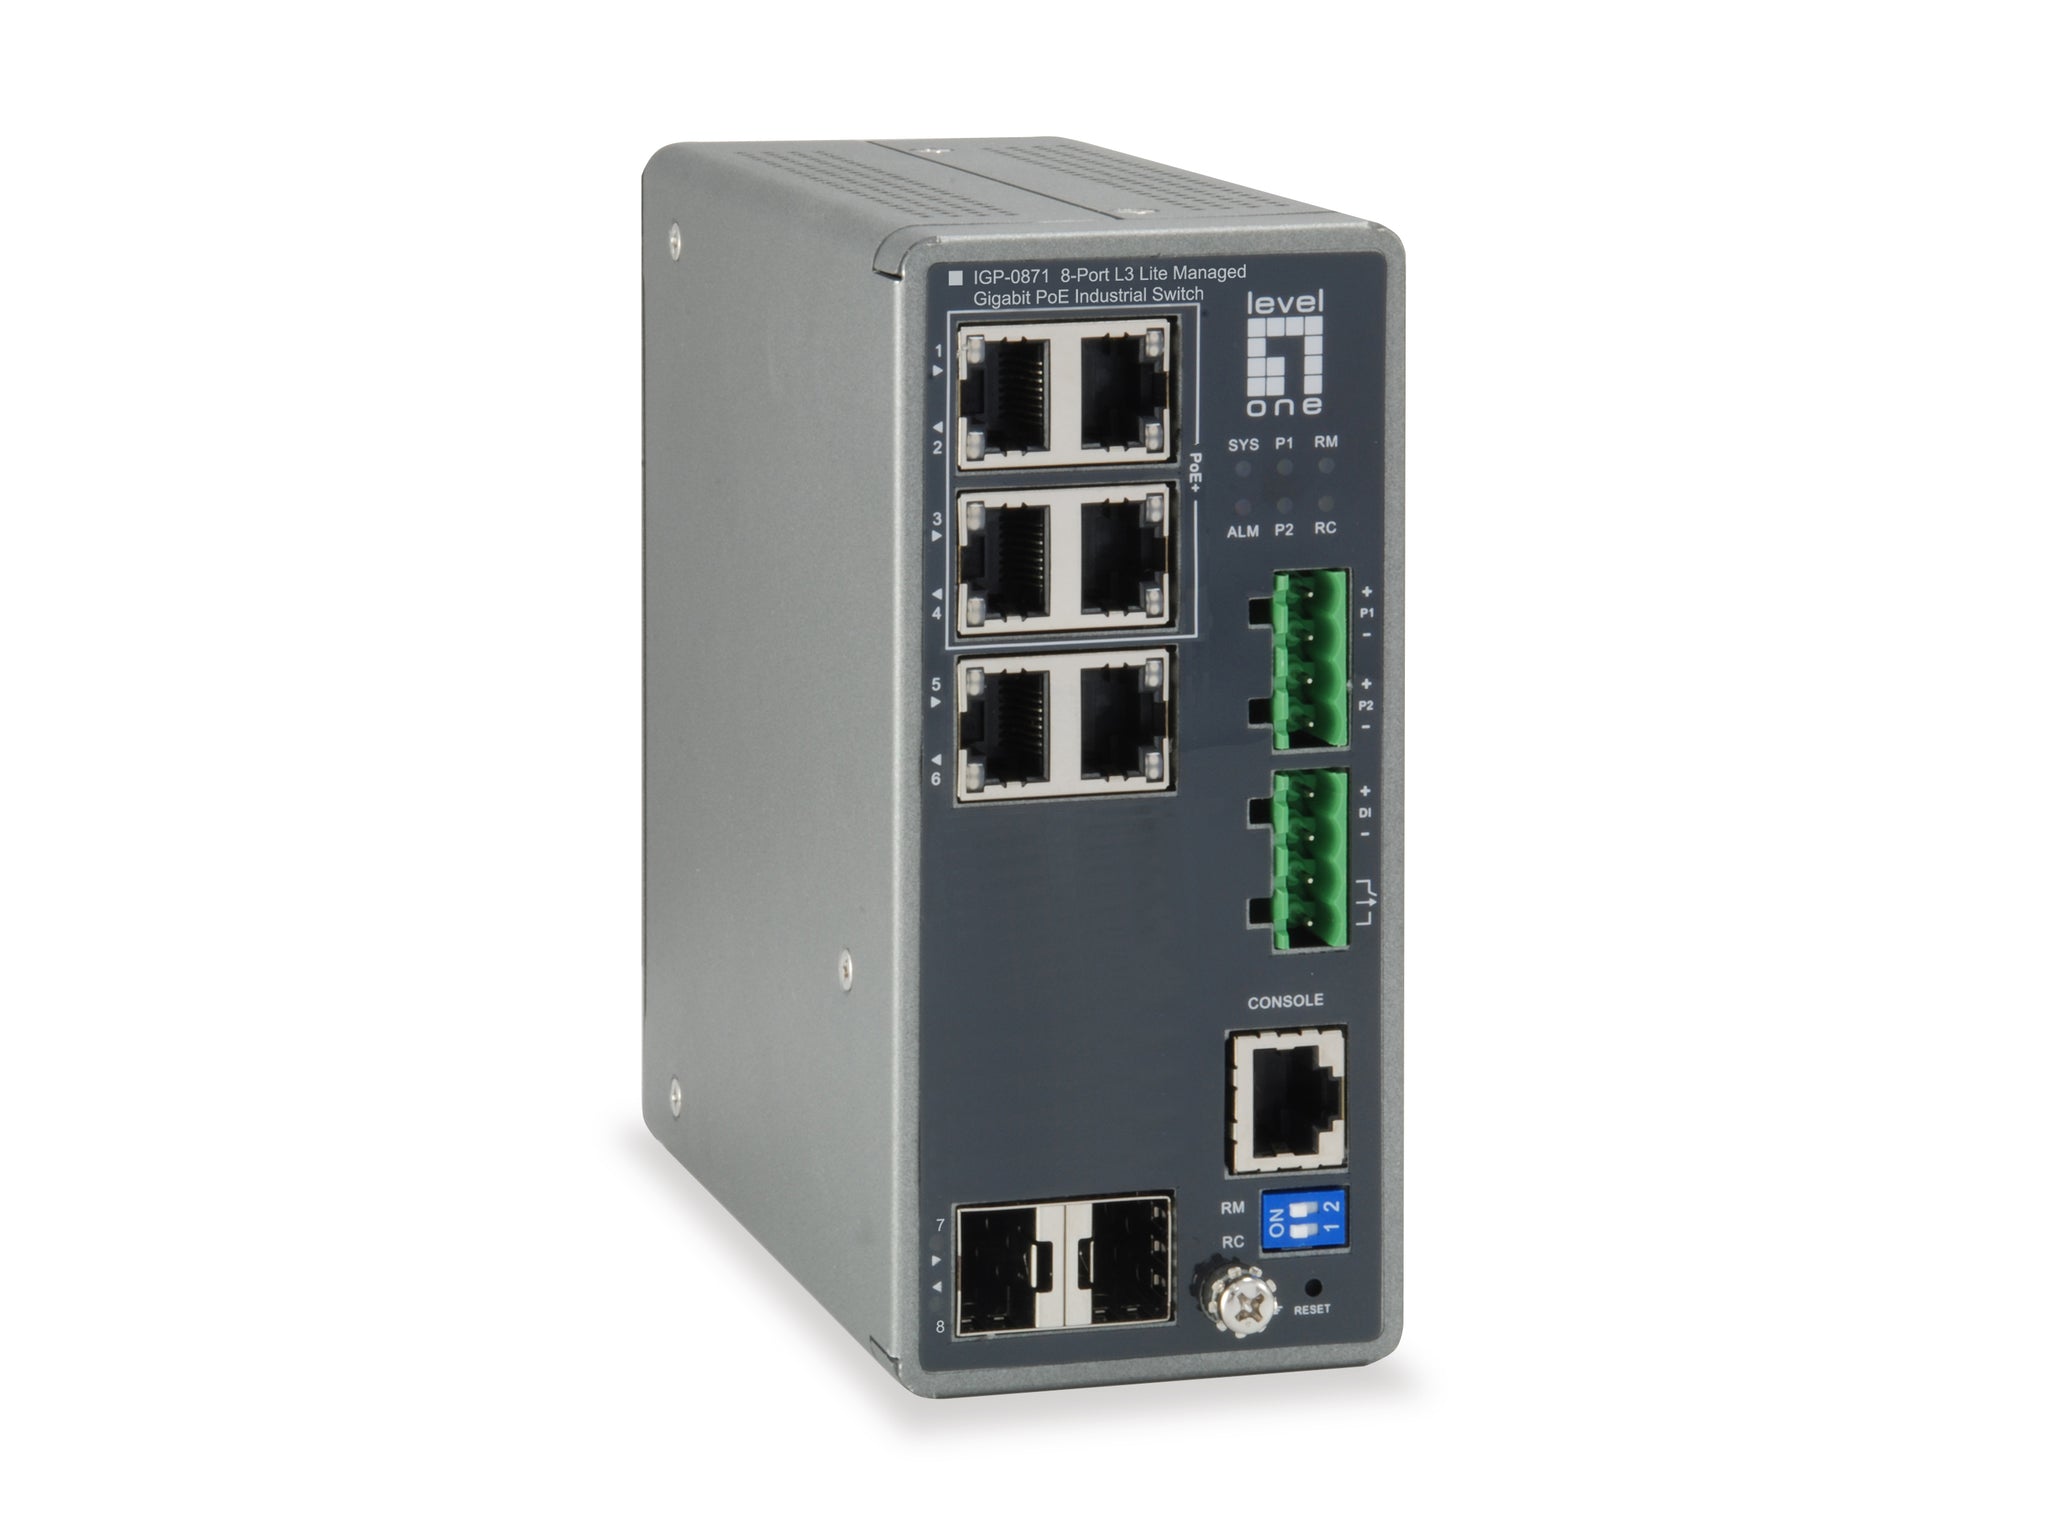 IGP-0871 TURING 8-Port L3 Lite Managed Gigabit PoE Industrial Switch, 2 x SFP, 4 PoE Outputs, 802.3at/af PoE, 120W, -40?øC to 75?øC